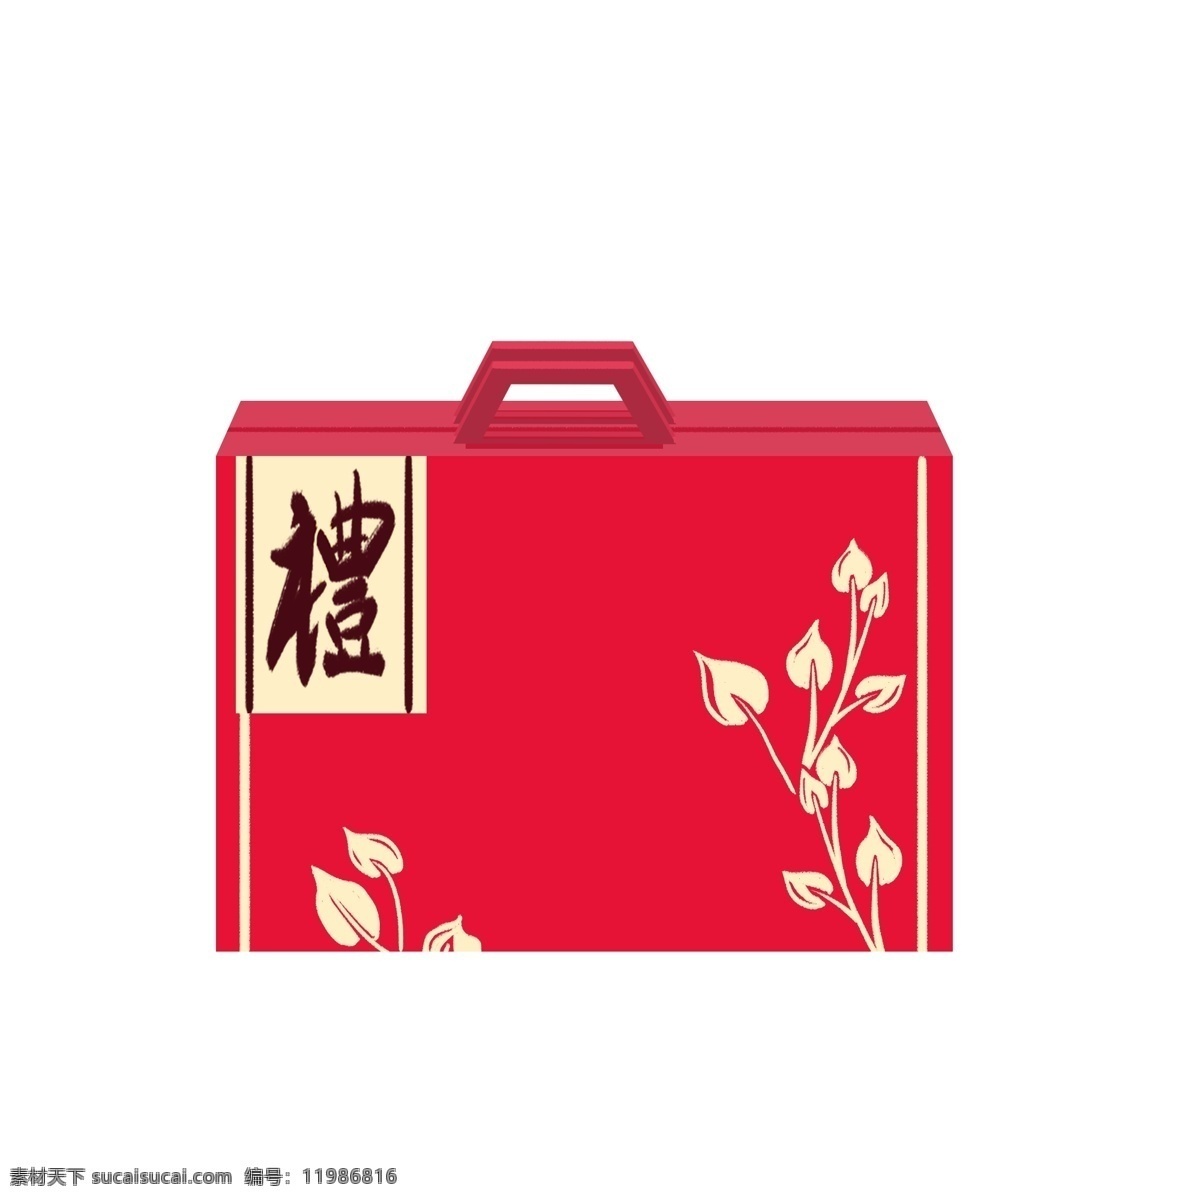 手绘 礼盒 年货 插画 红色的礼盒 新年的礼物 卡通插画 手绘年货插画 新年的礼品 新年的礼盒